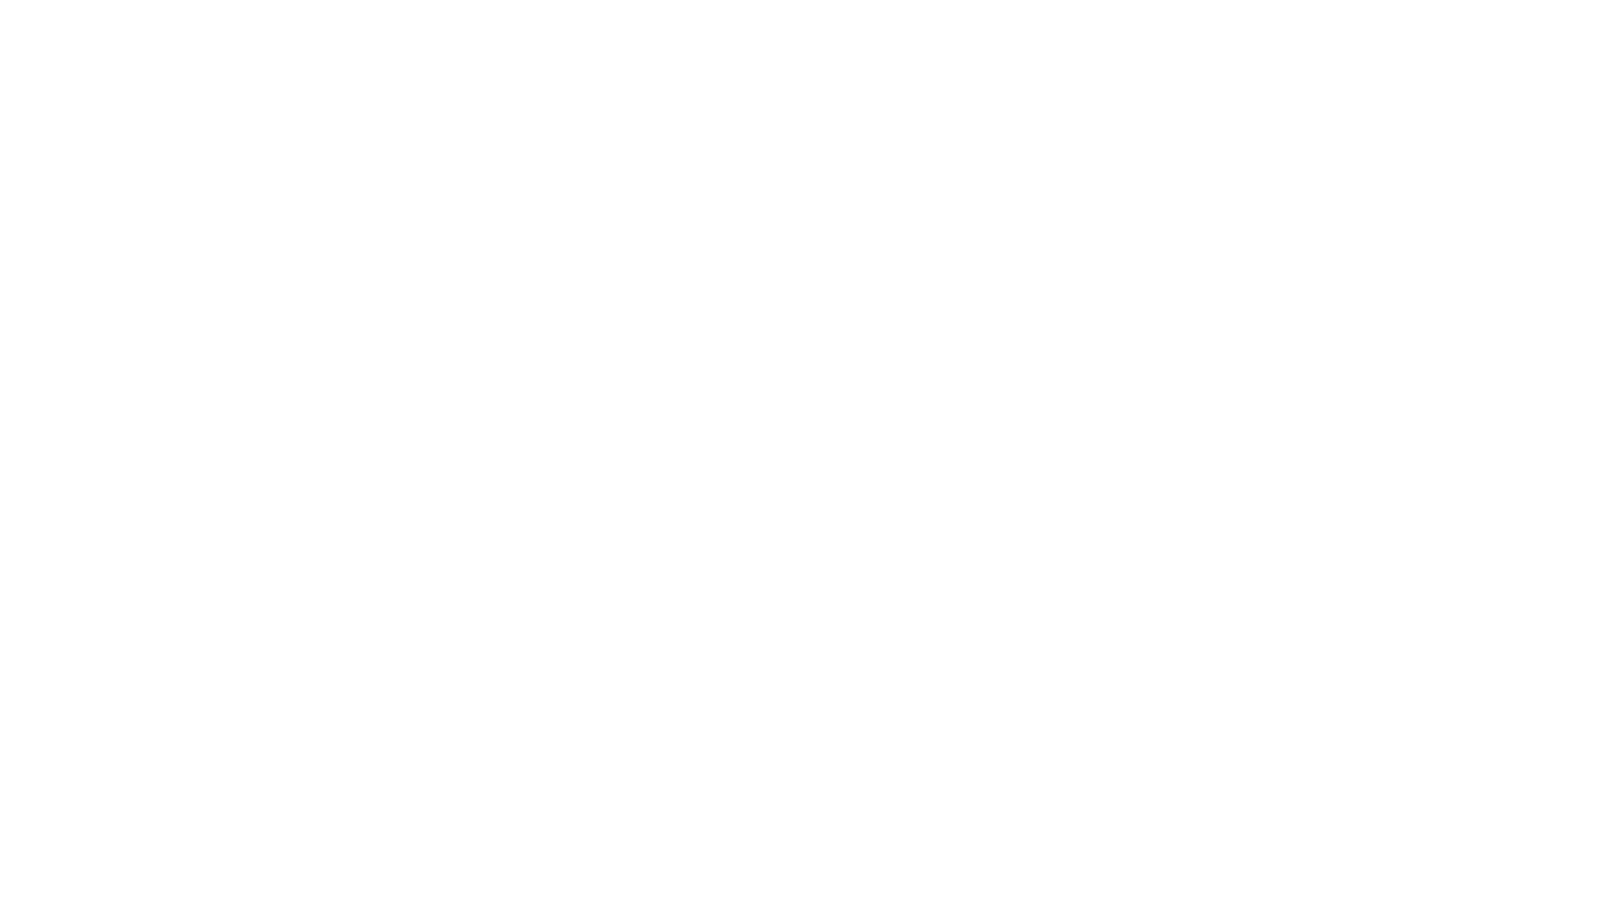 Visita el Castillo de Calatrava la Nueva a partir del Martes 7 de Julio en nuestro horario habitual (imágenes de dronne cedidas por Francisco Pino). 

Sede principal de la Orden de Calatrava desde 1217 y uno de los castillos roqueros más importantes del mundo.

Más información en la web oficial www.castillodecalatrava.org